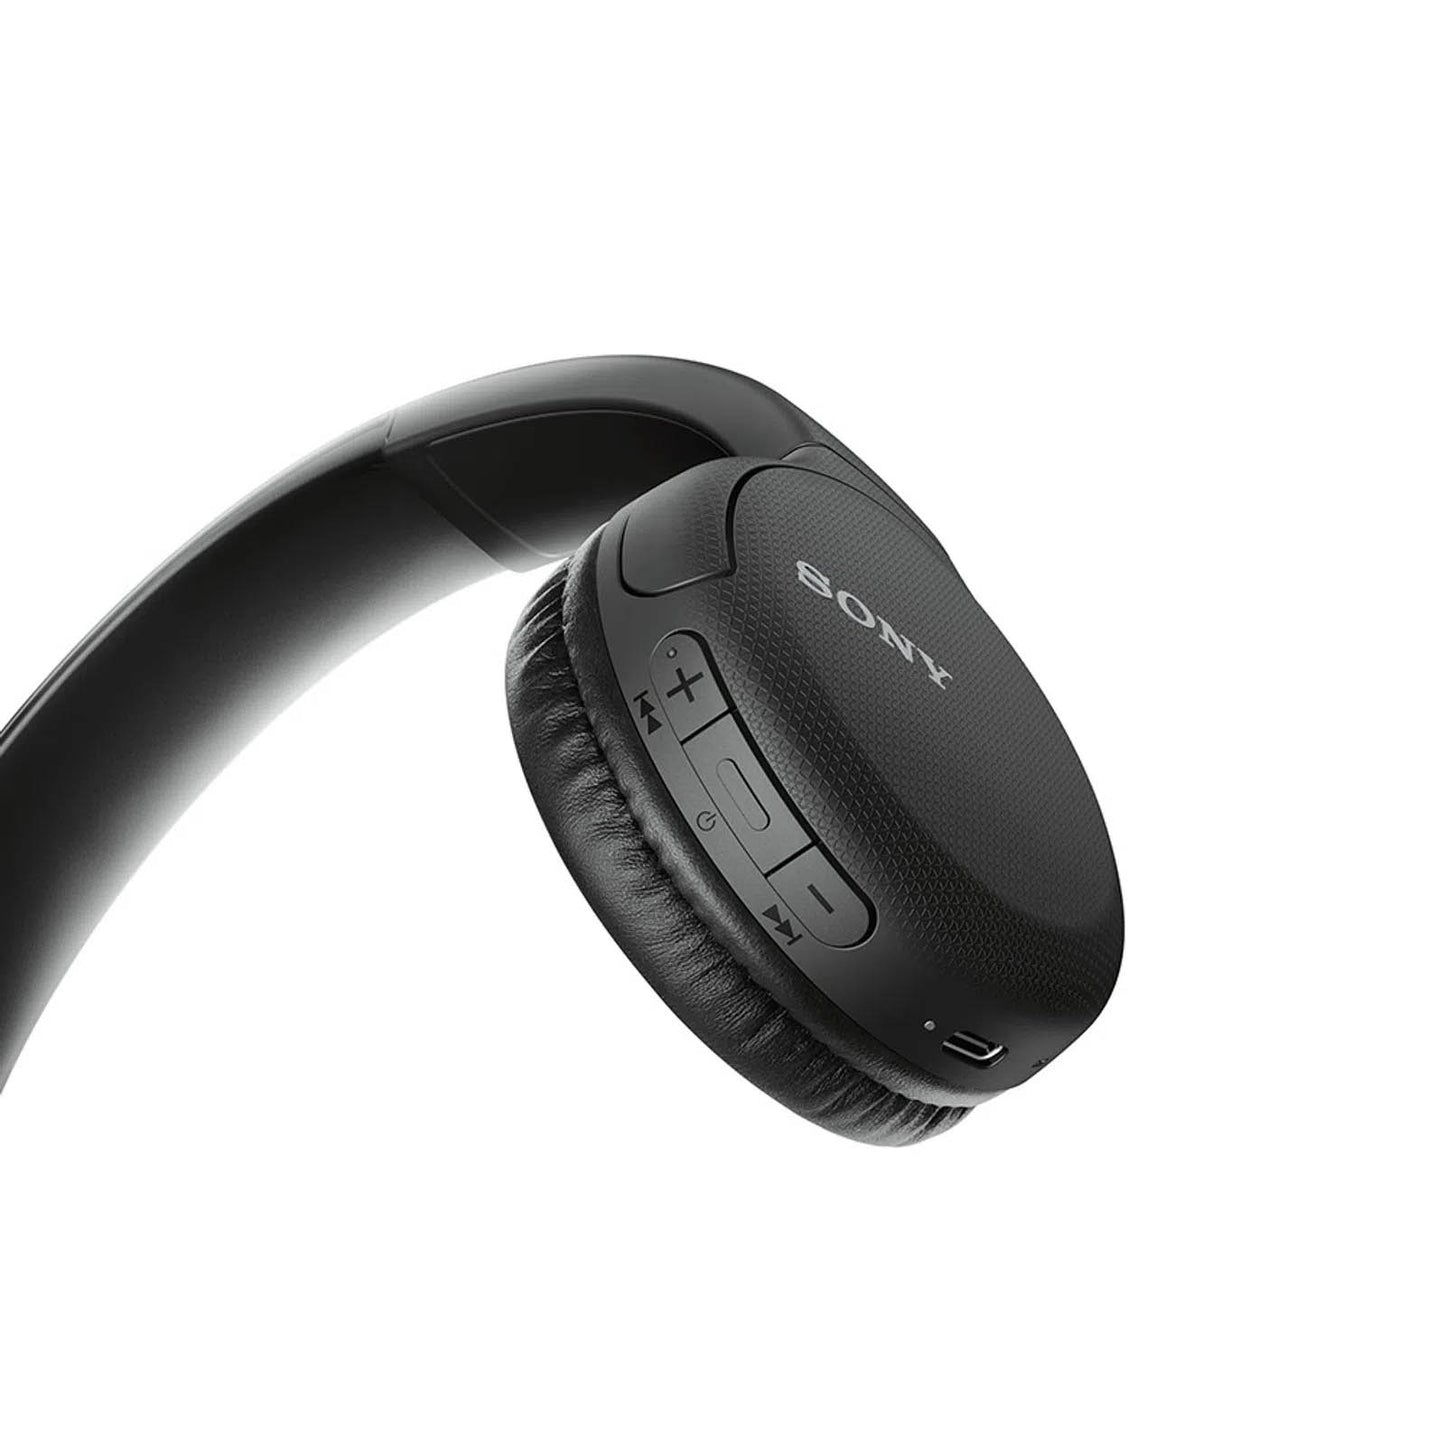 Audífonos Bluetooth de Diadema Sony WH-CH510/NEGR